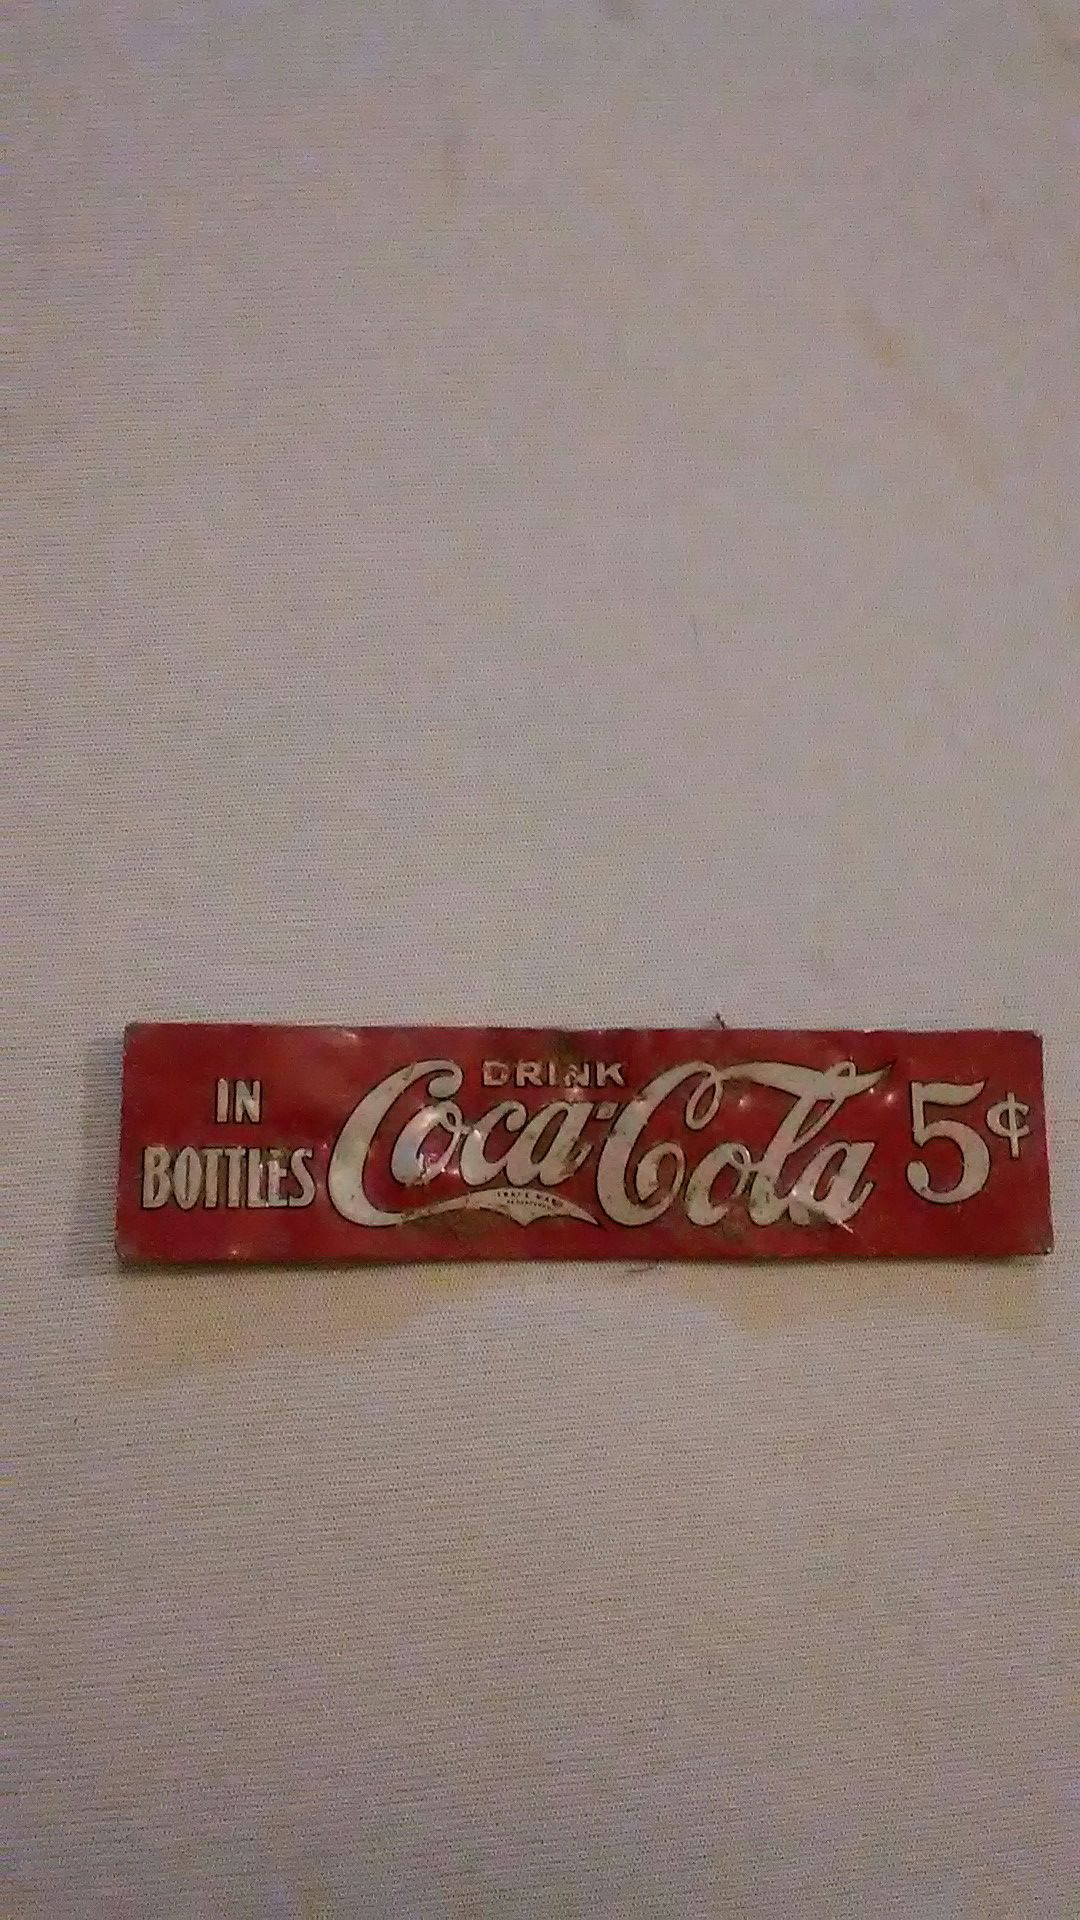 Old Coca-Cola metal tag